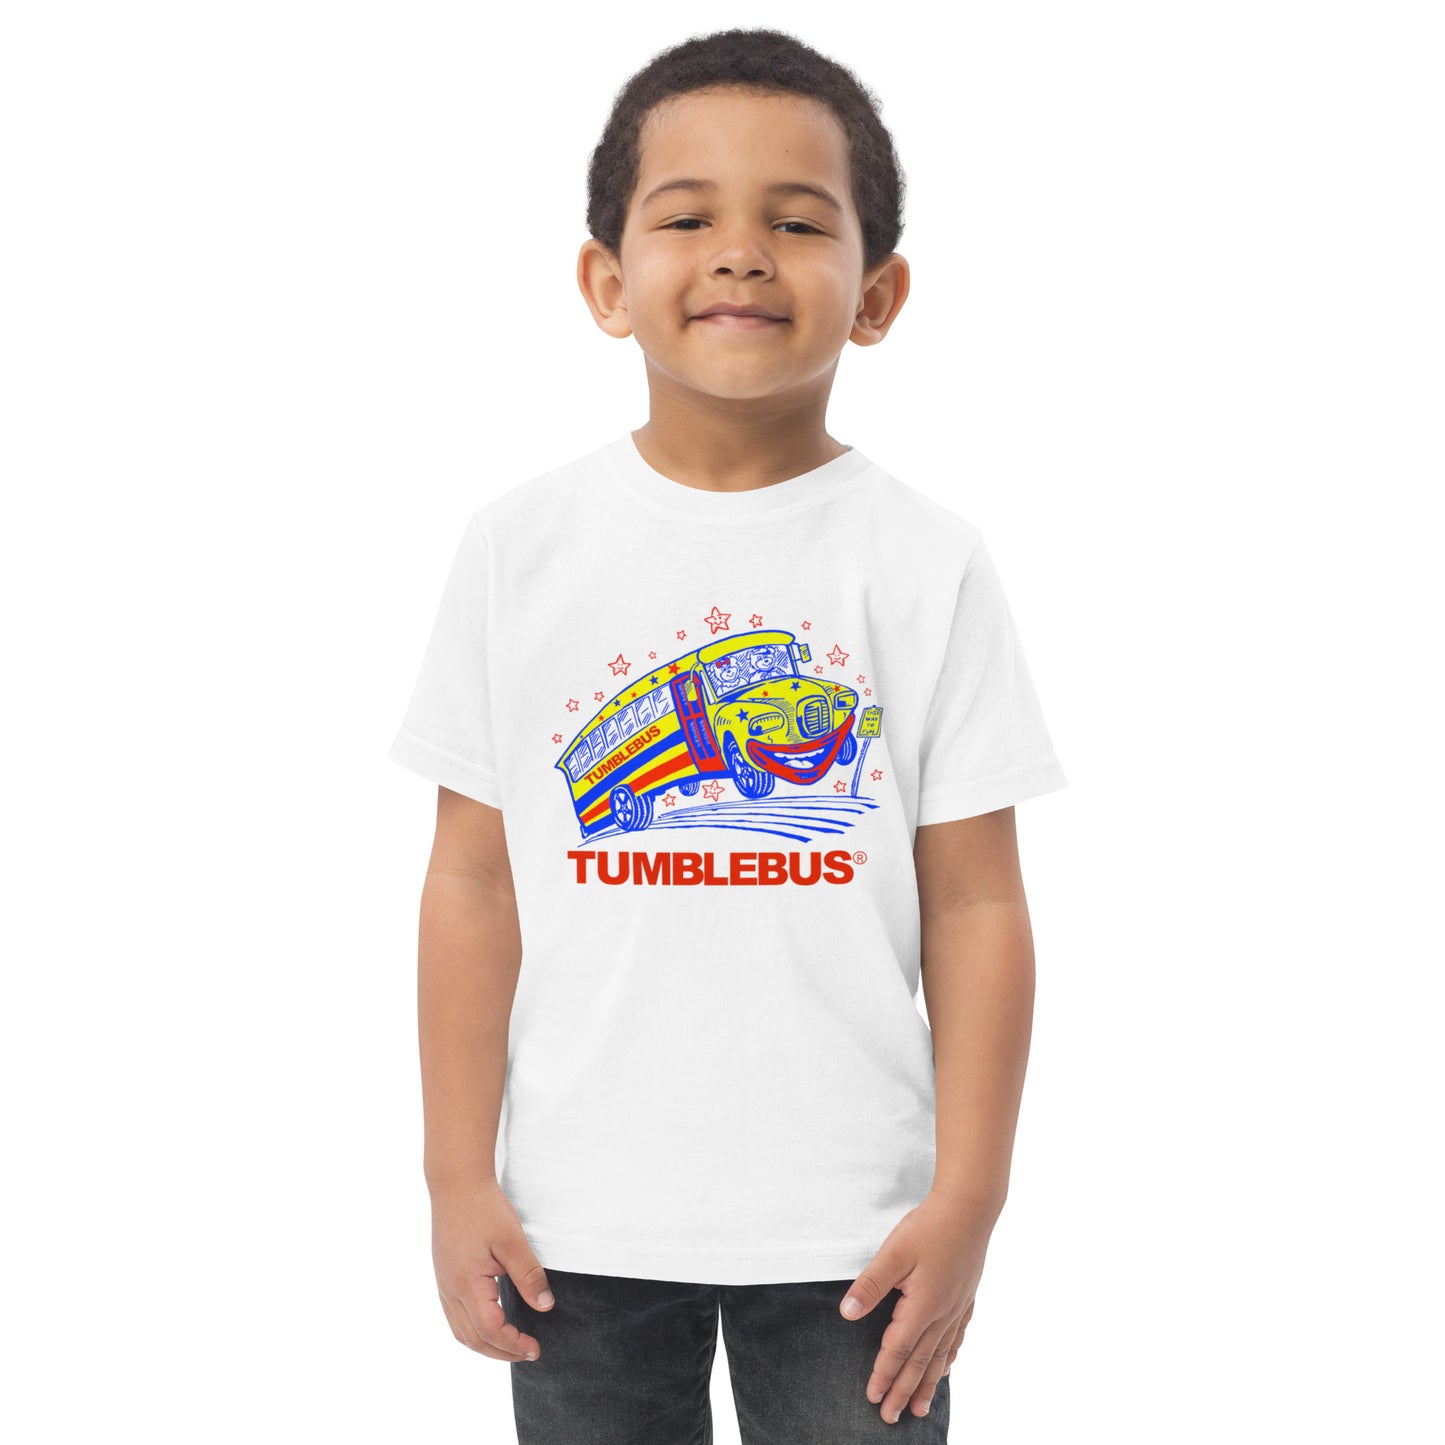 Toddler Tumblebus t-shirt